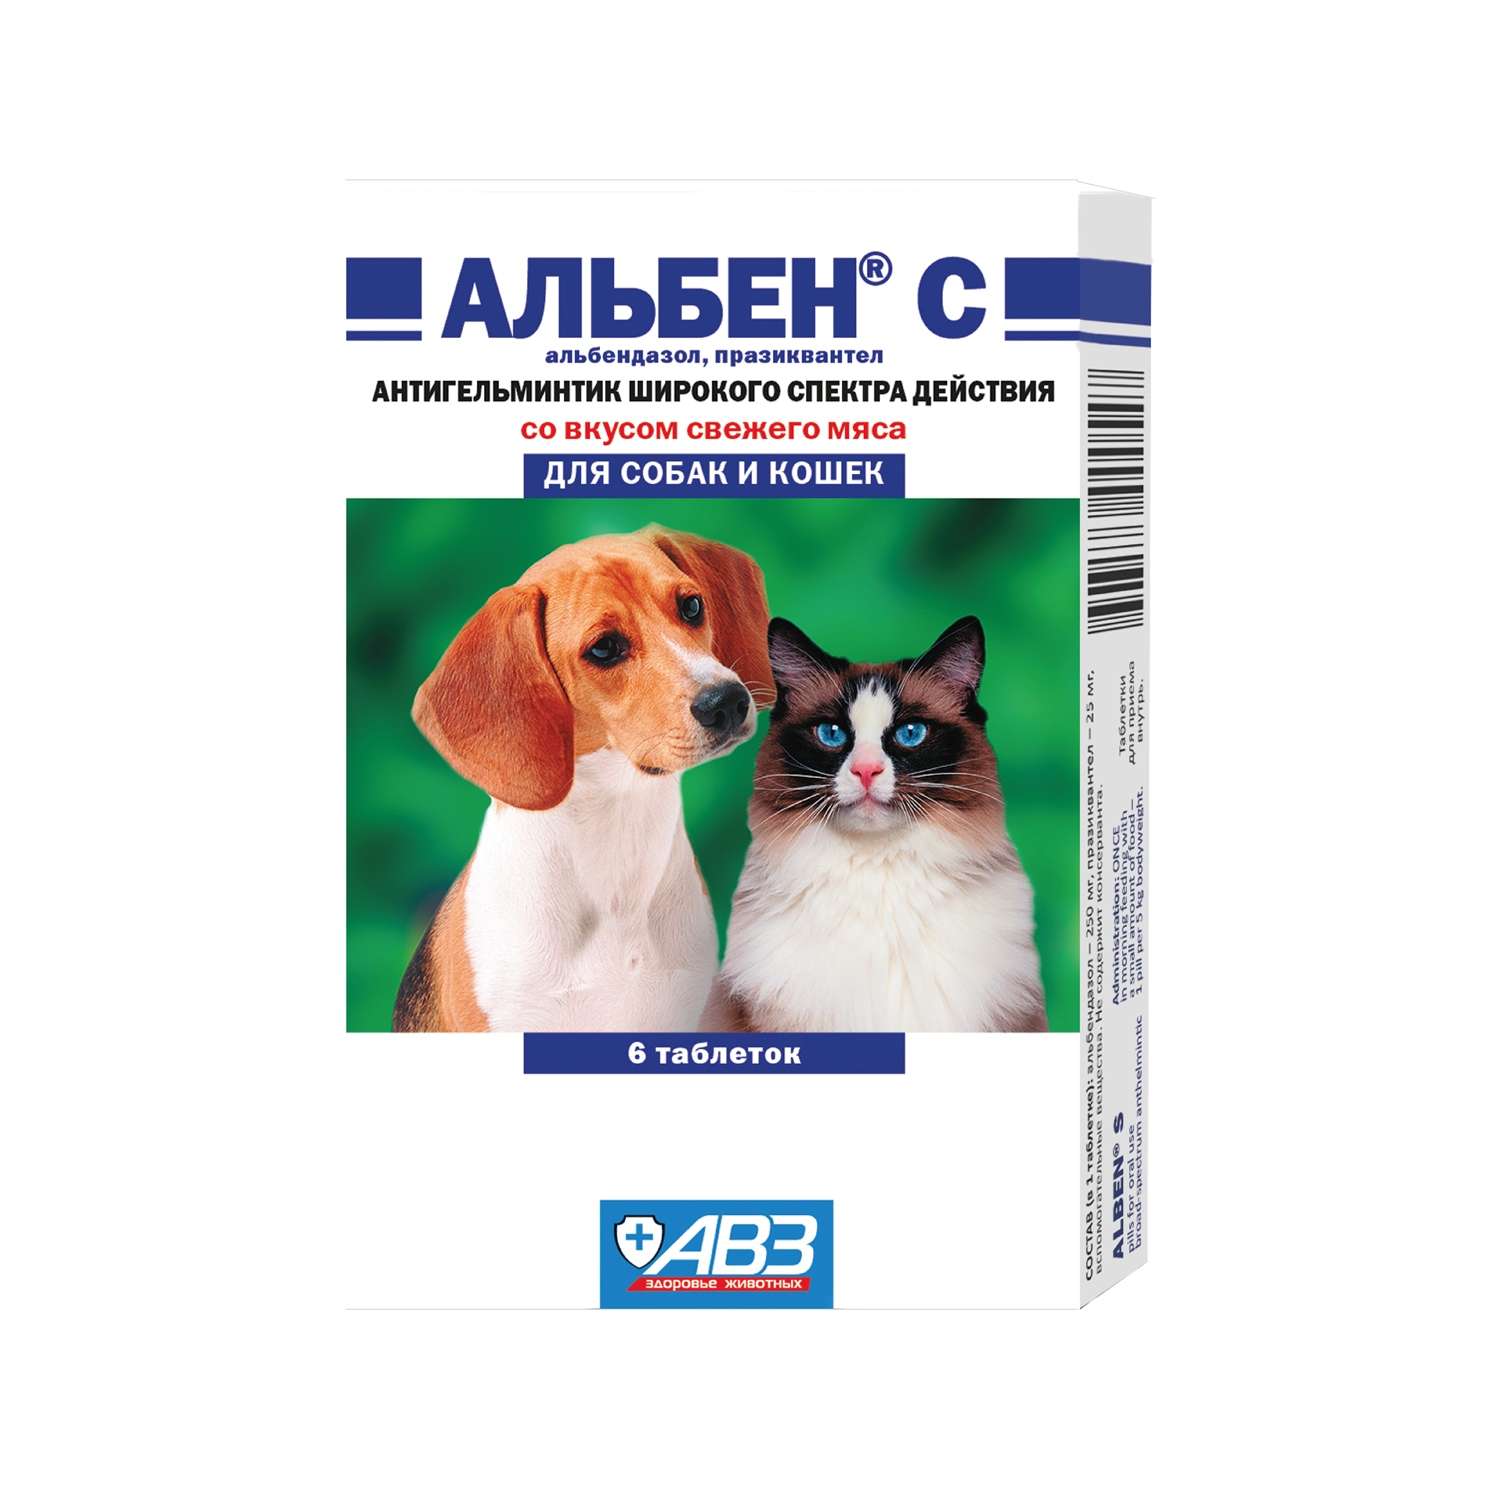 Таблетки против круглых и ленточных гельминтов для собак и кошек АВЗ Альбен С 6 таблеток - фото 1